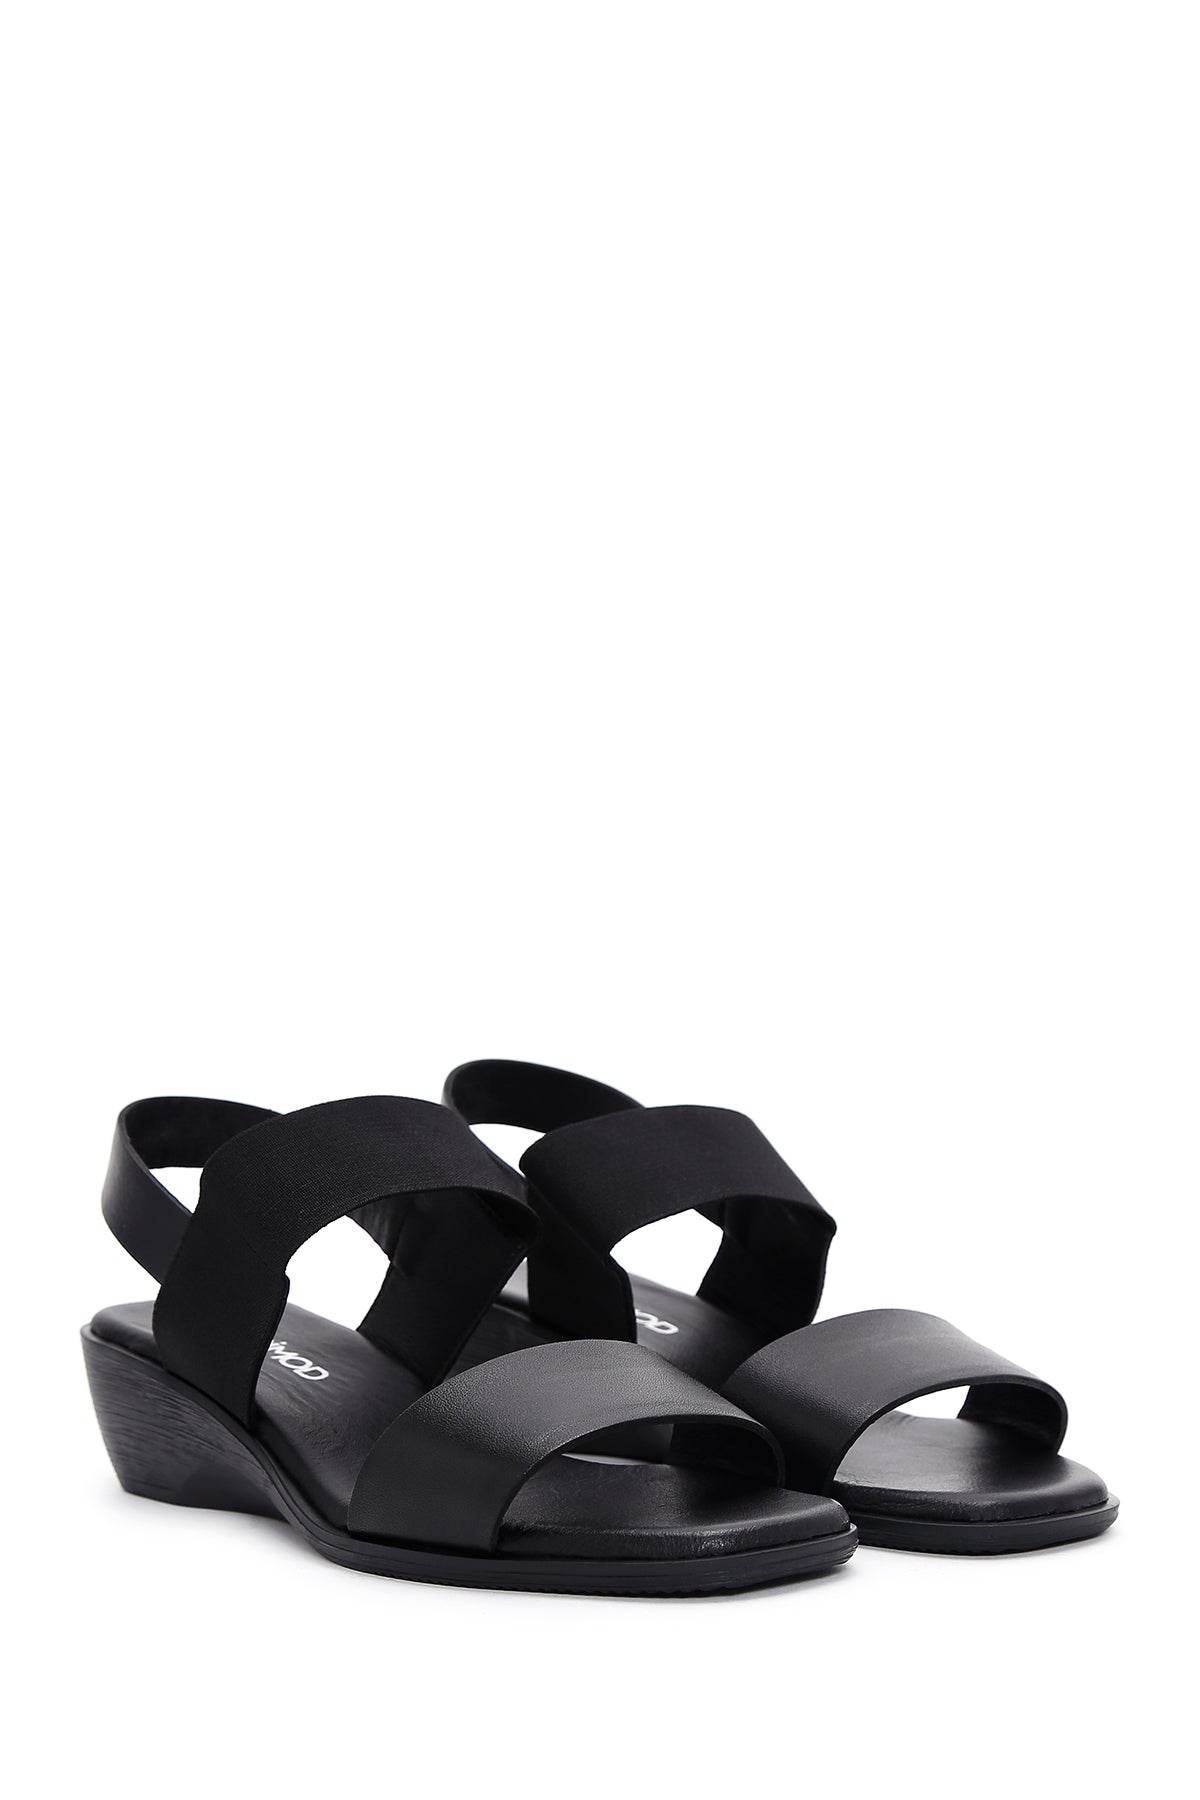 Kadın Siyah Deri Dolgu Topuk Comfort Sandalet